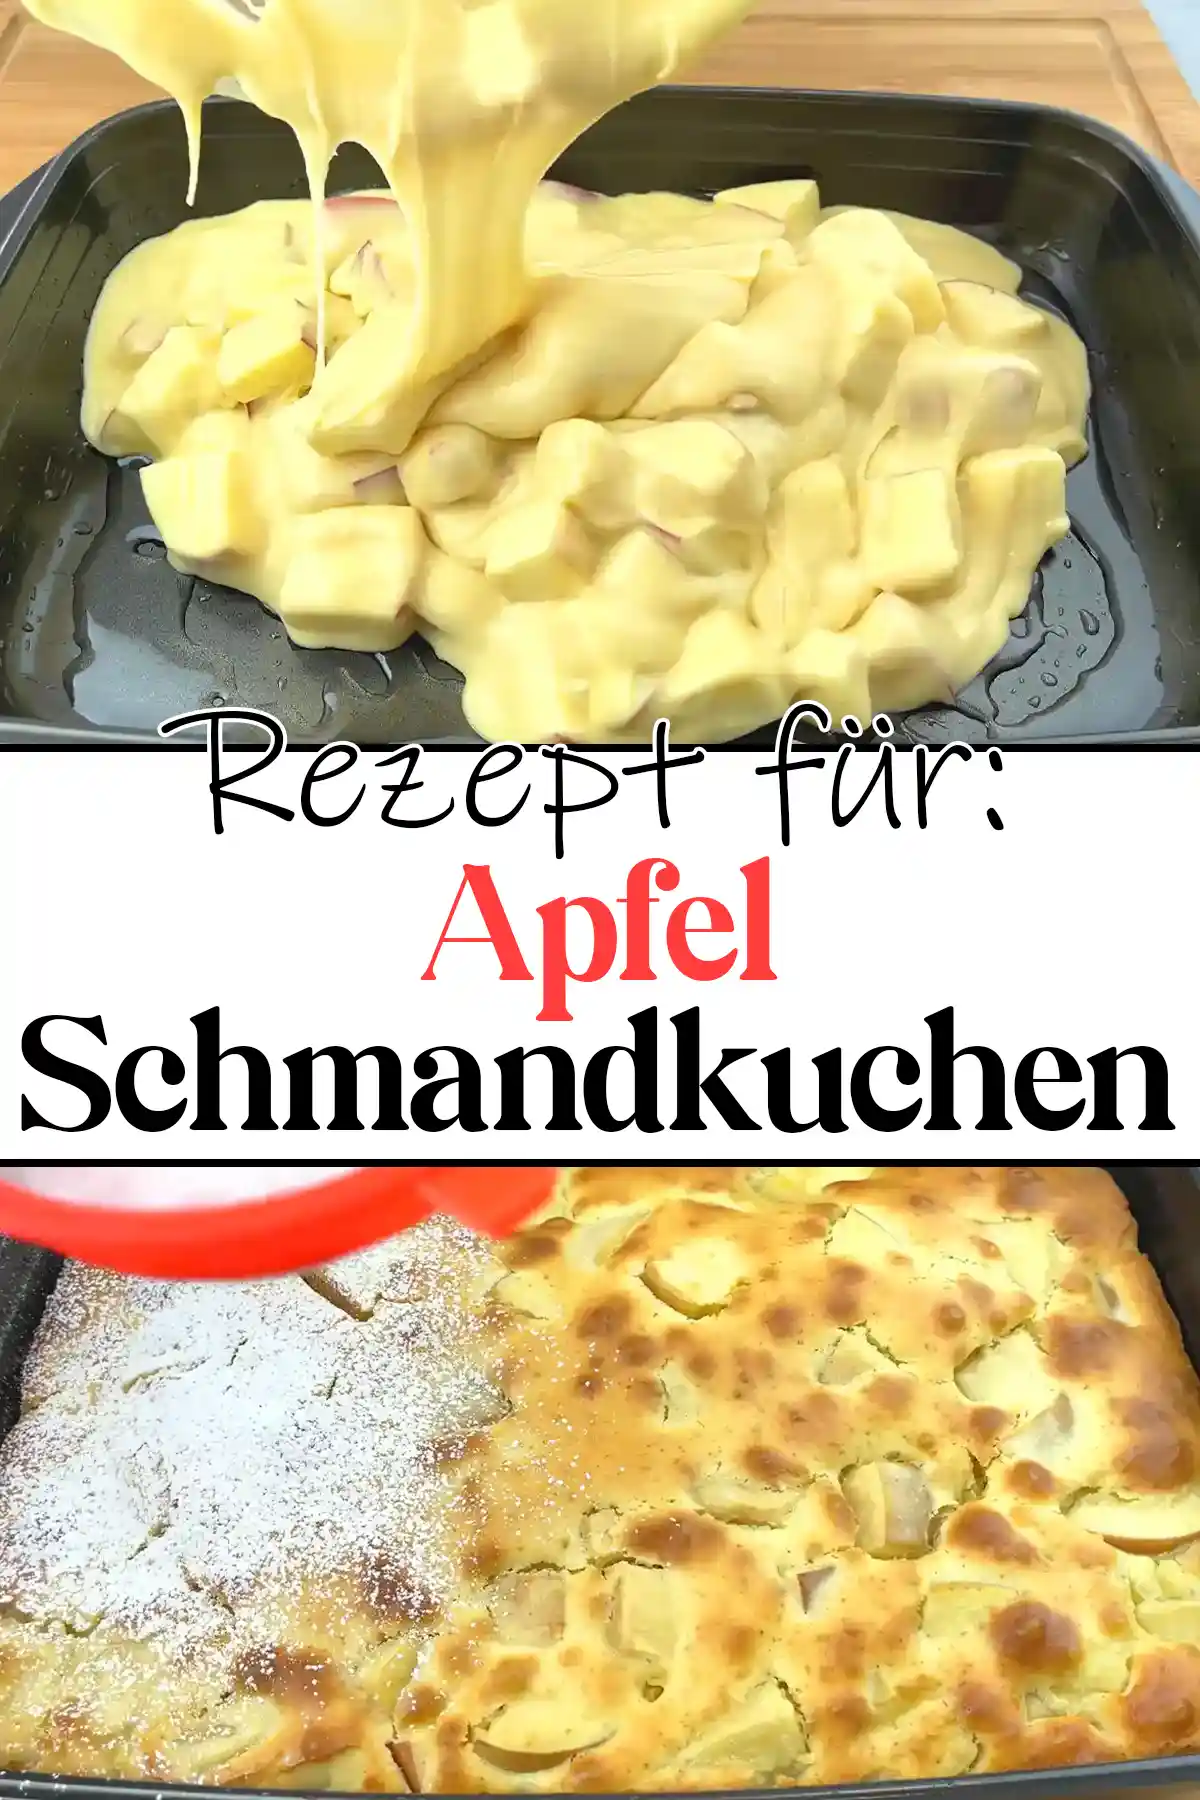 Apfel Schmandkuchen Rezept in 5 Minuten Zubereitet!